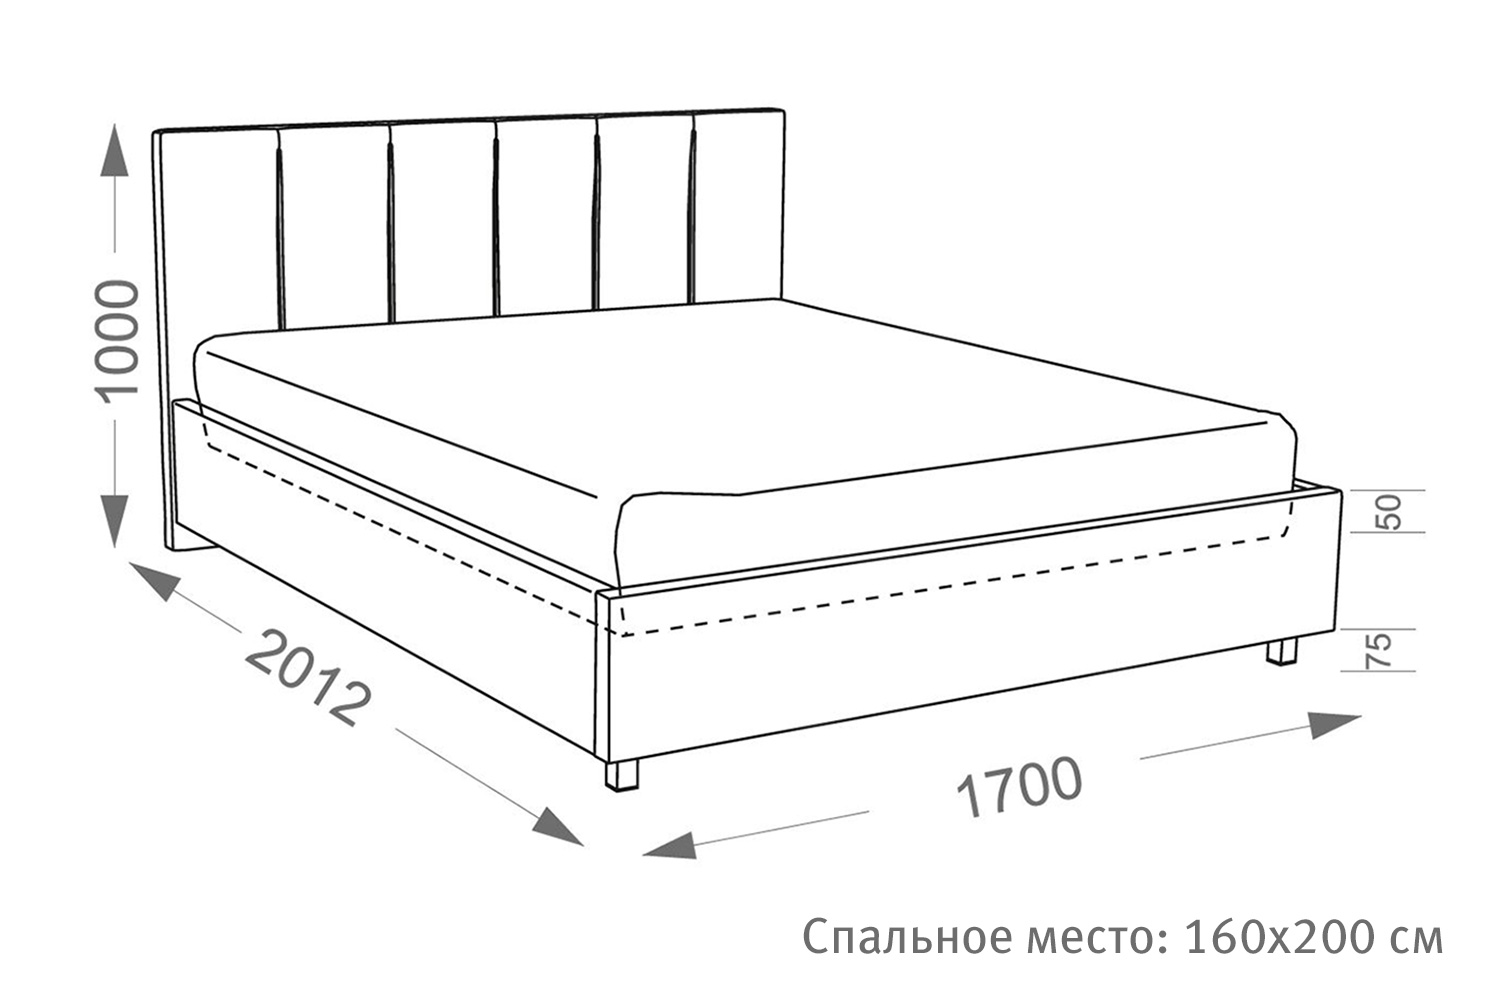 Кровать Berta